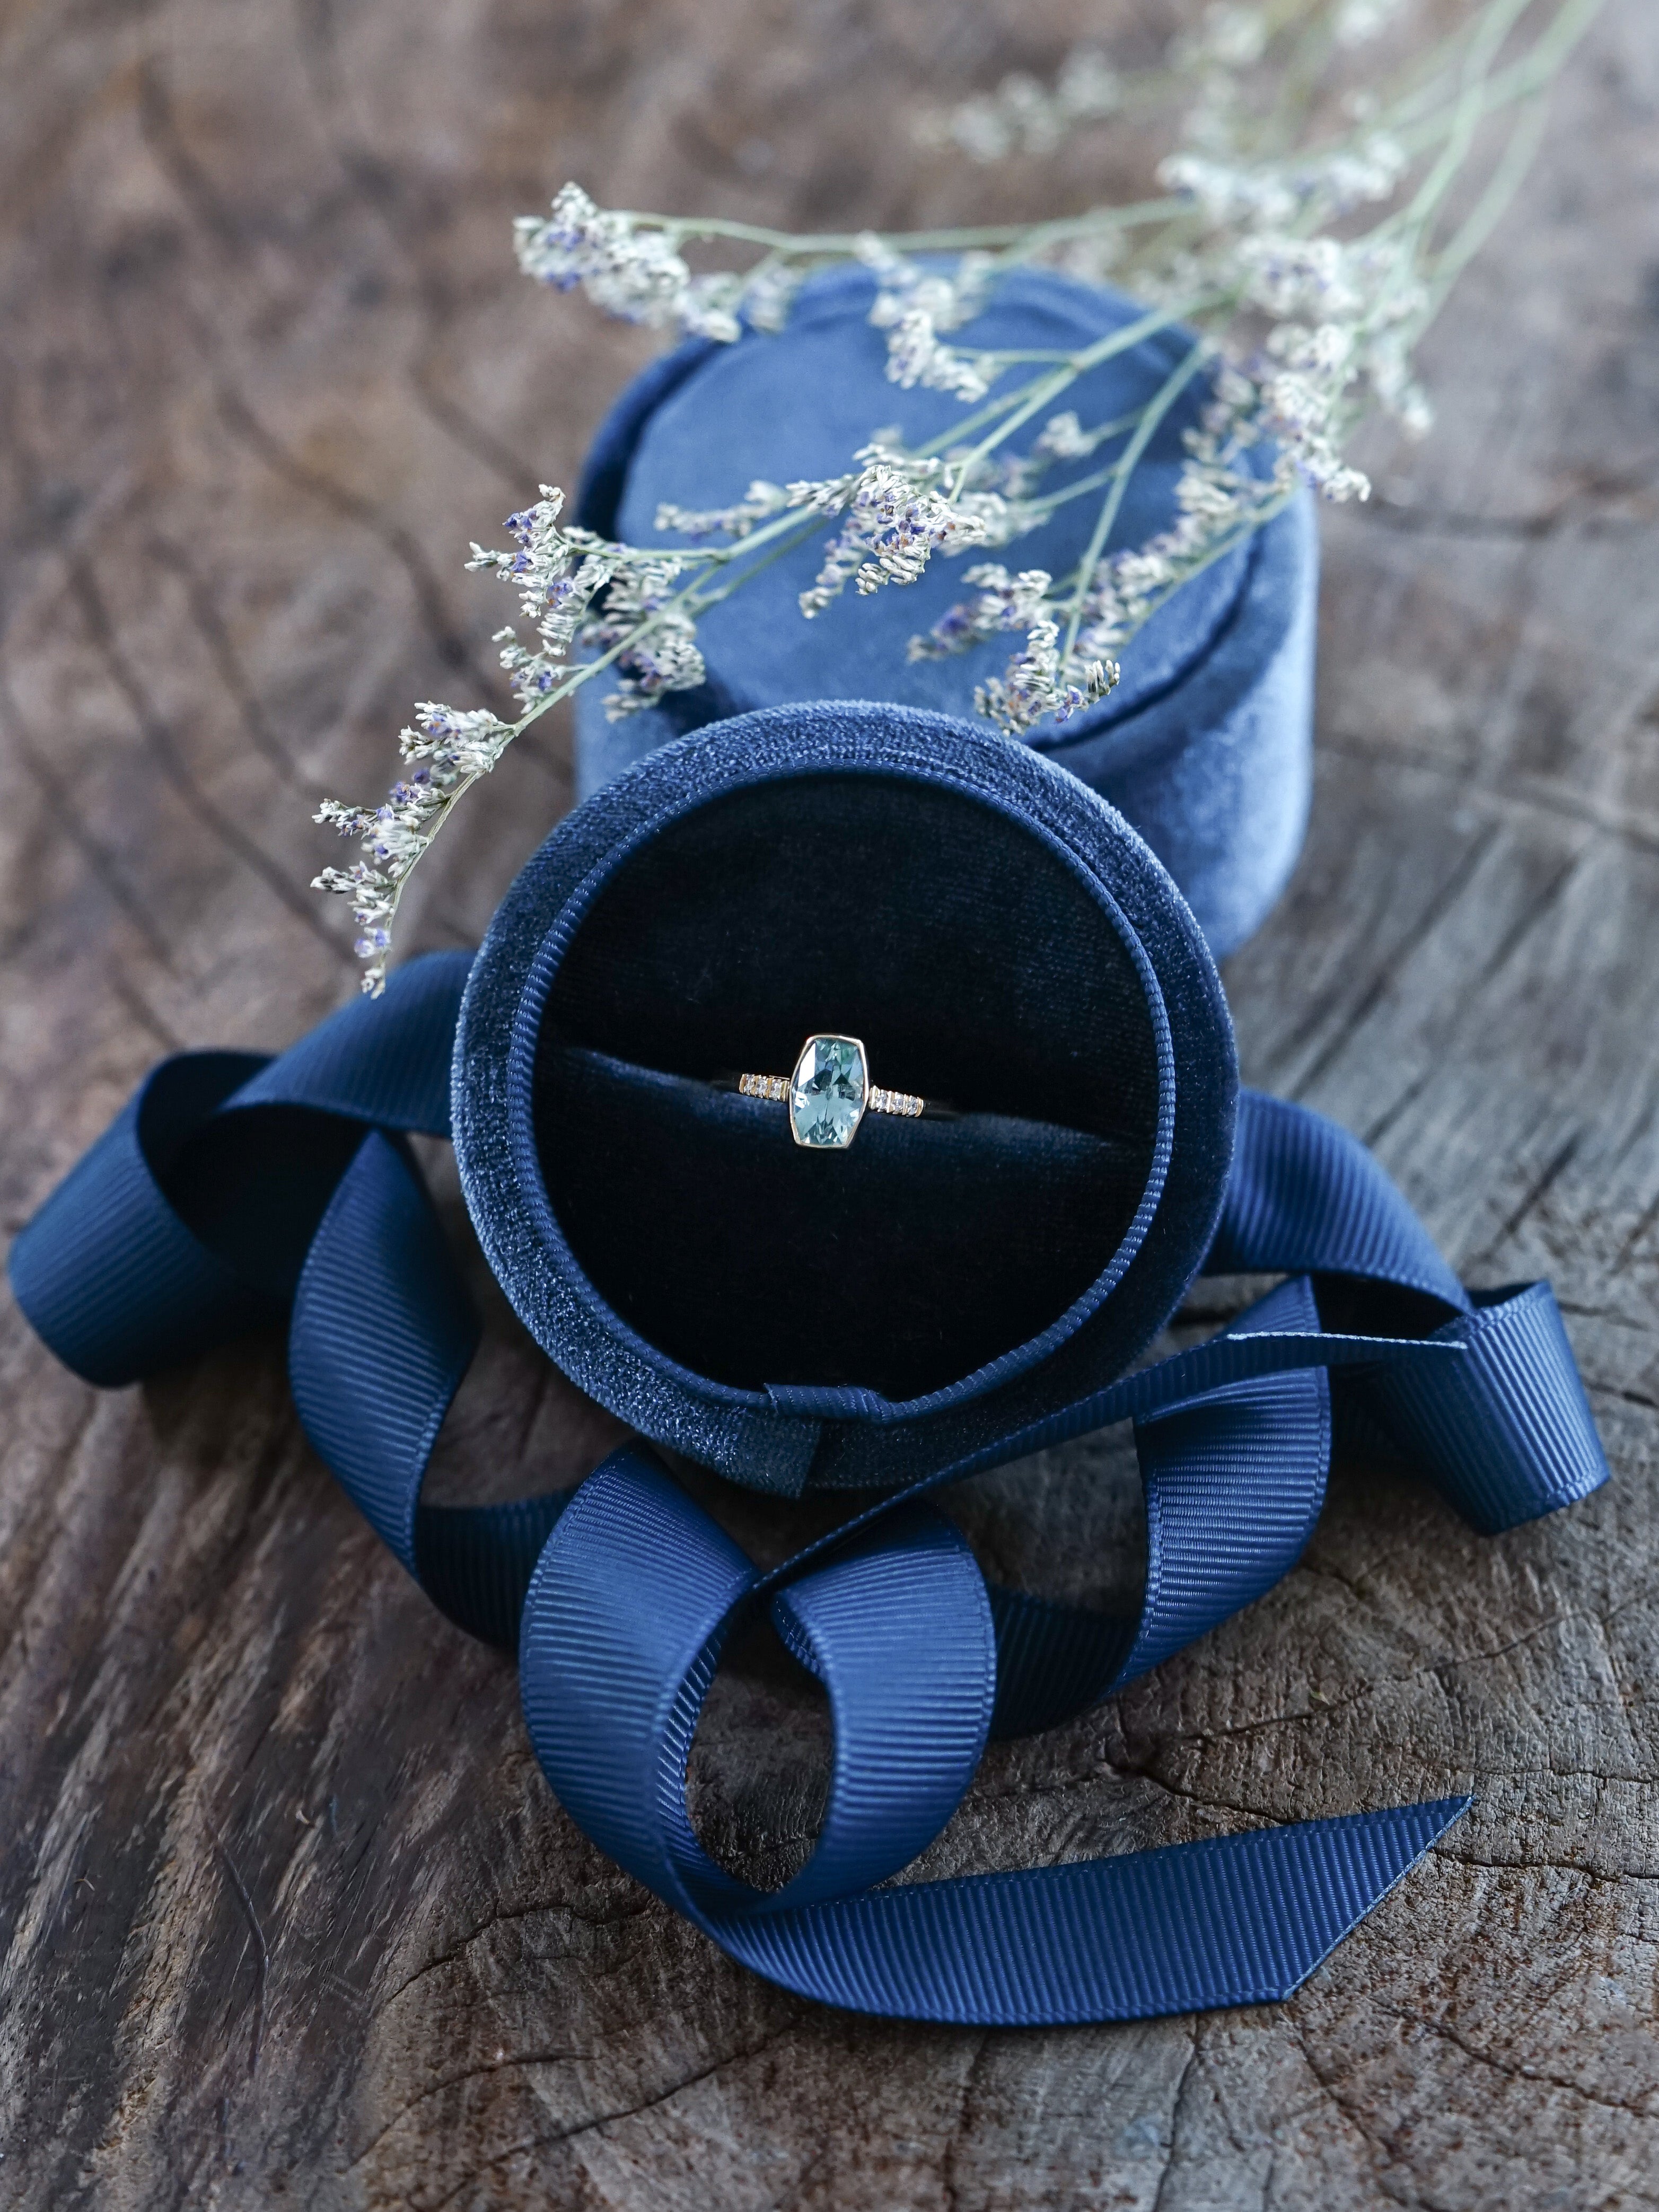 Velvet Engagement Ring Box